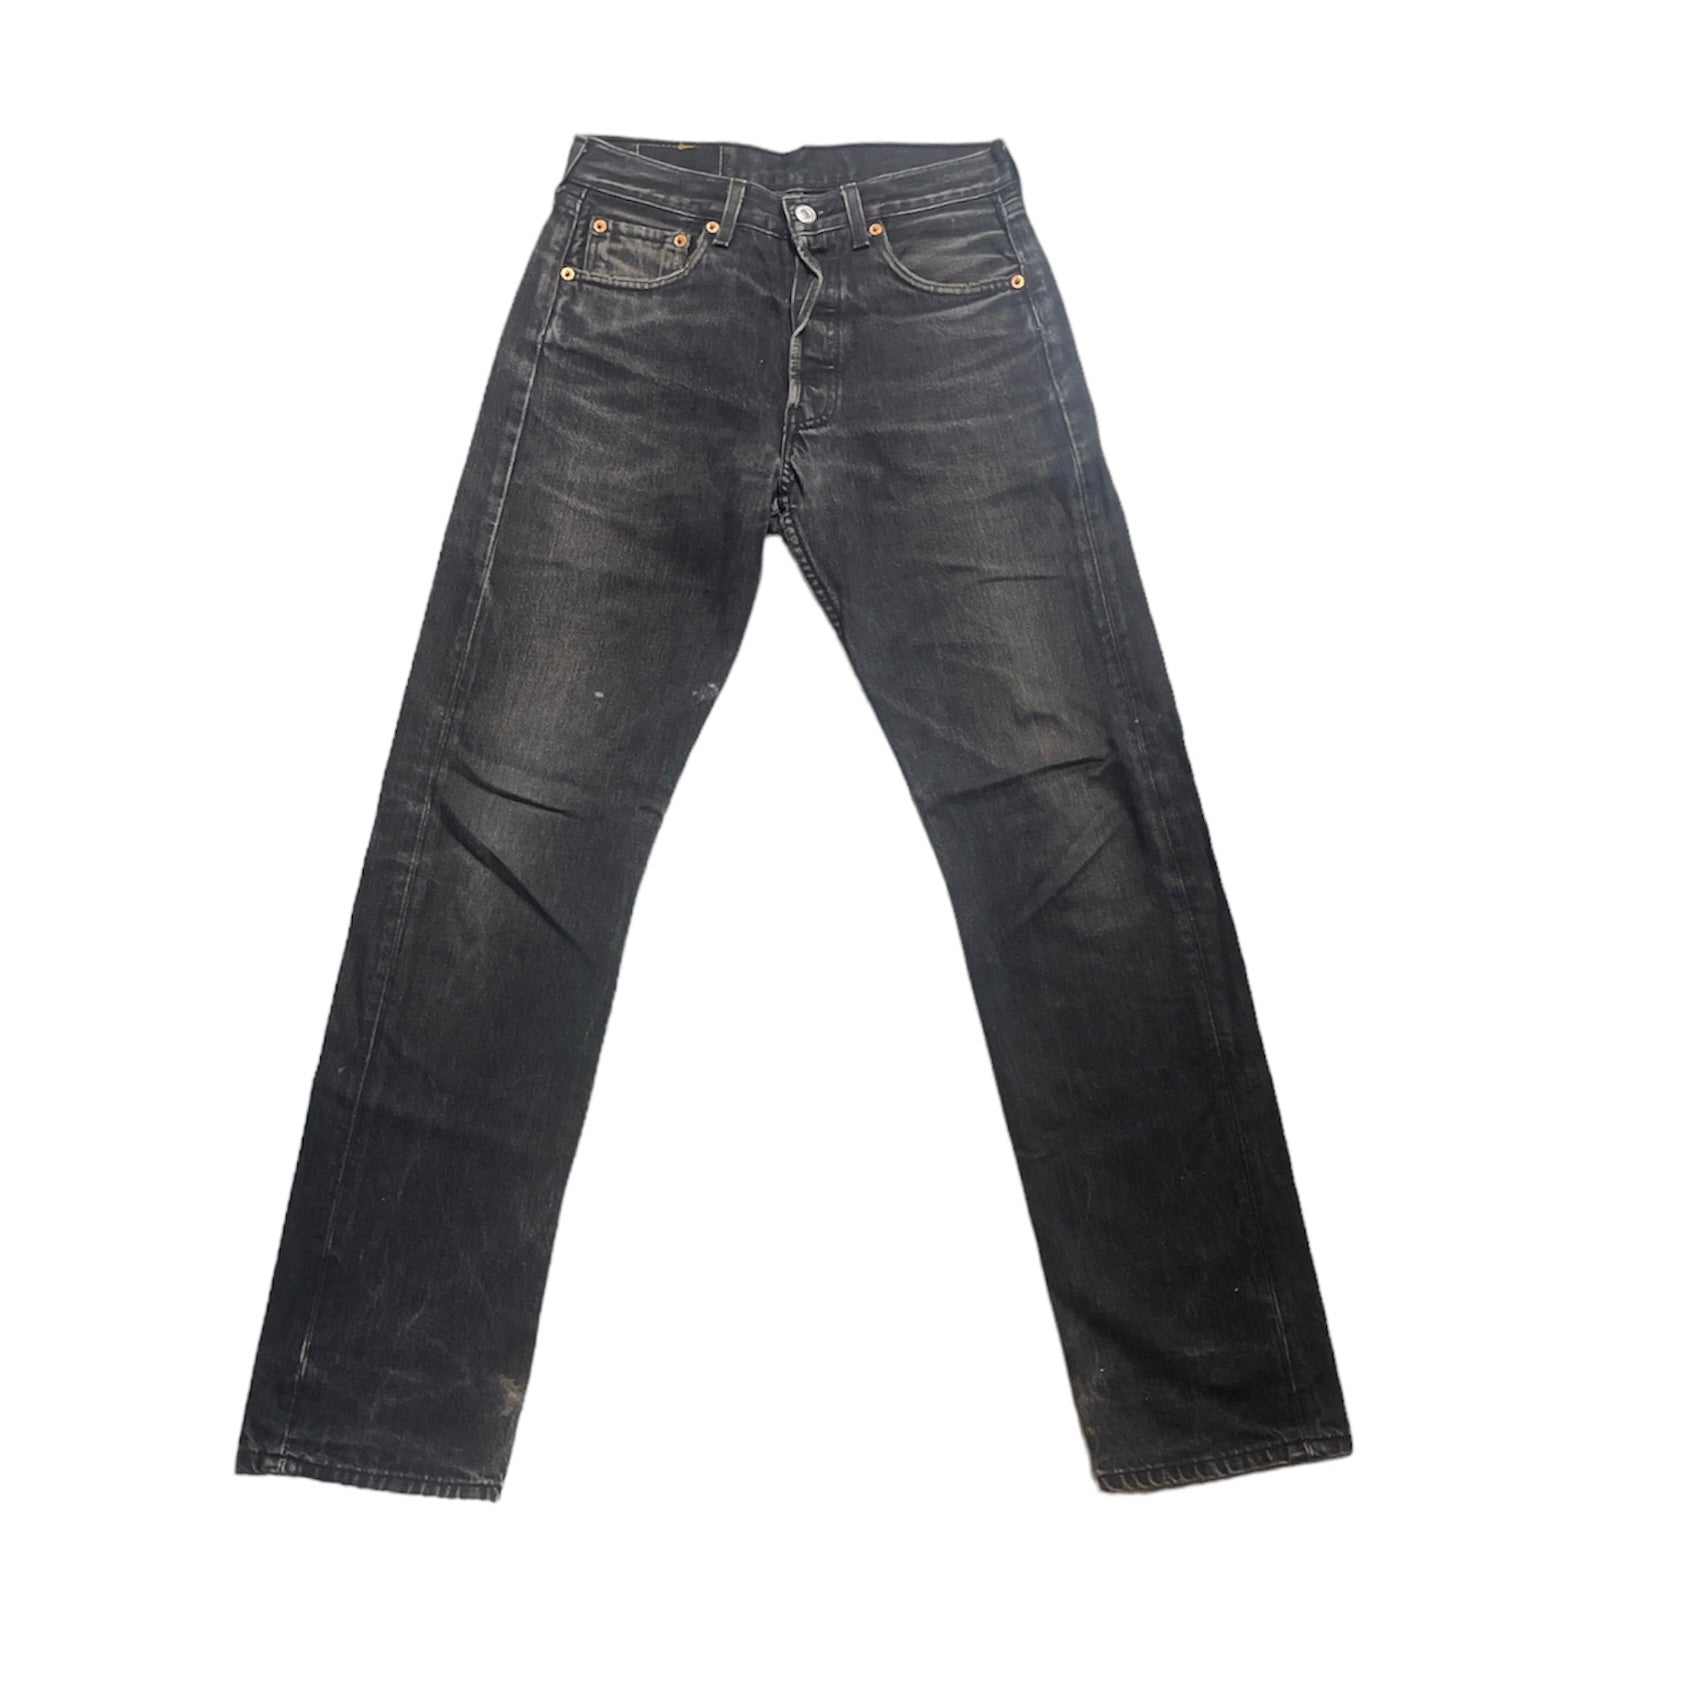 Vintage Levis 501 Vintage Black Jeans (W28/L32)